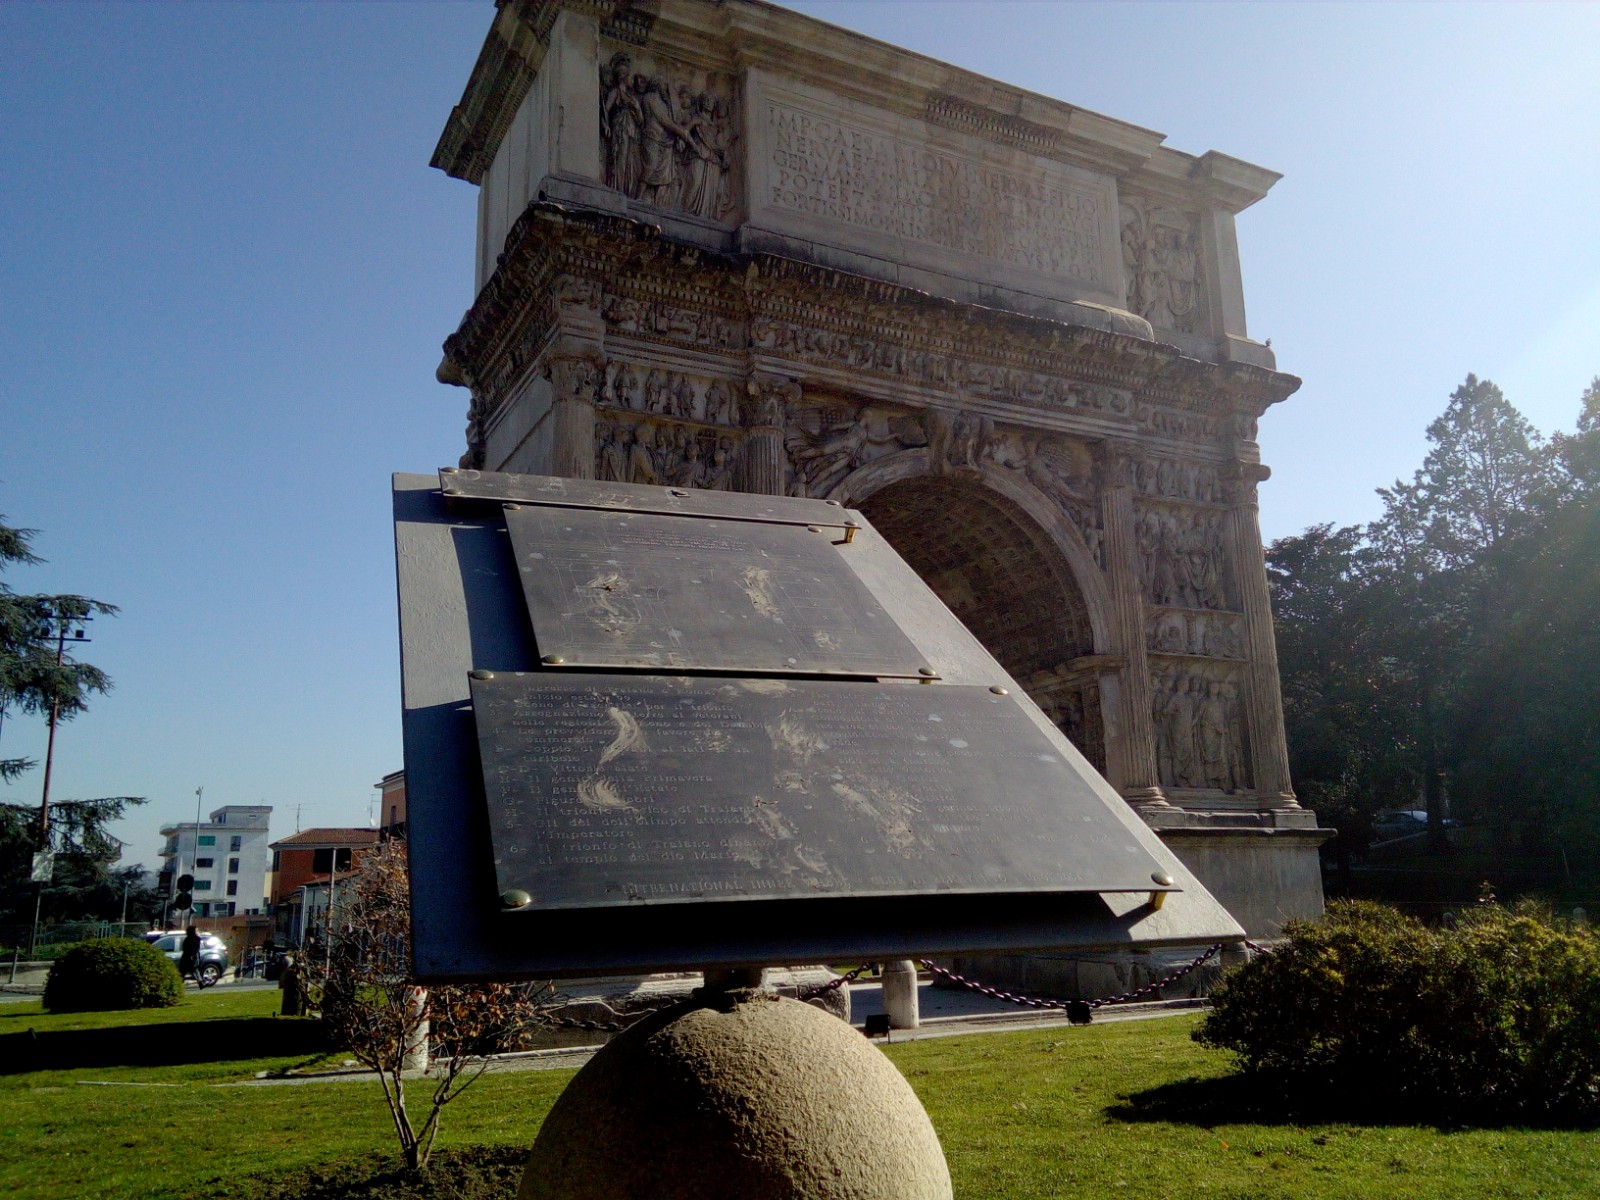 Arco di Traiano “monumento nazionale”, ok dal Senato. Provvedimento alla Camera per l’approvazione definitiva